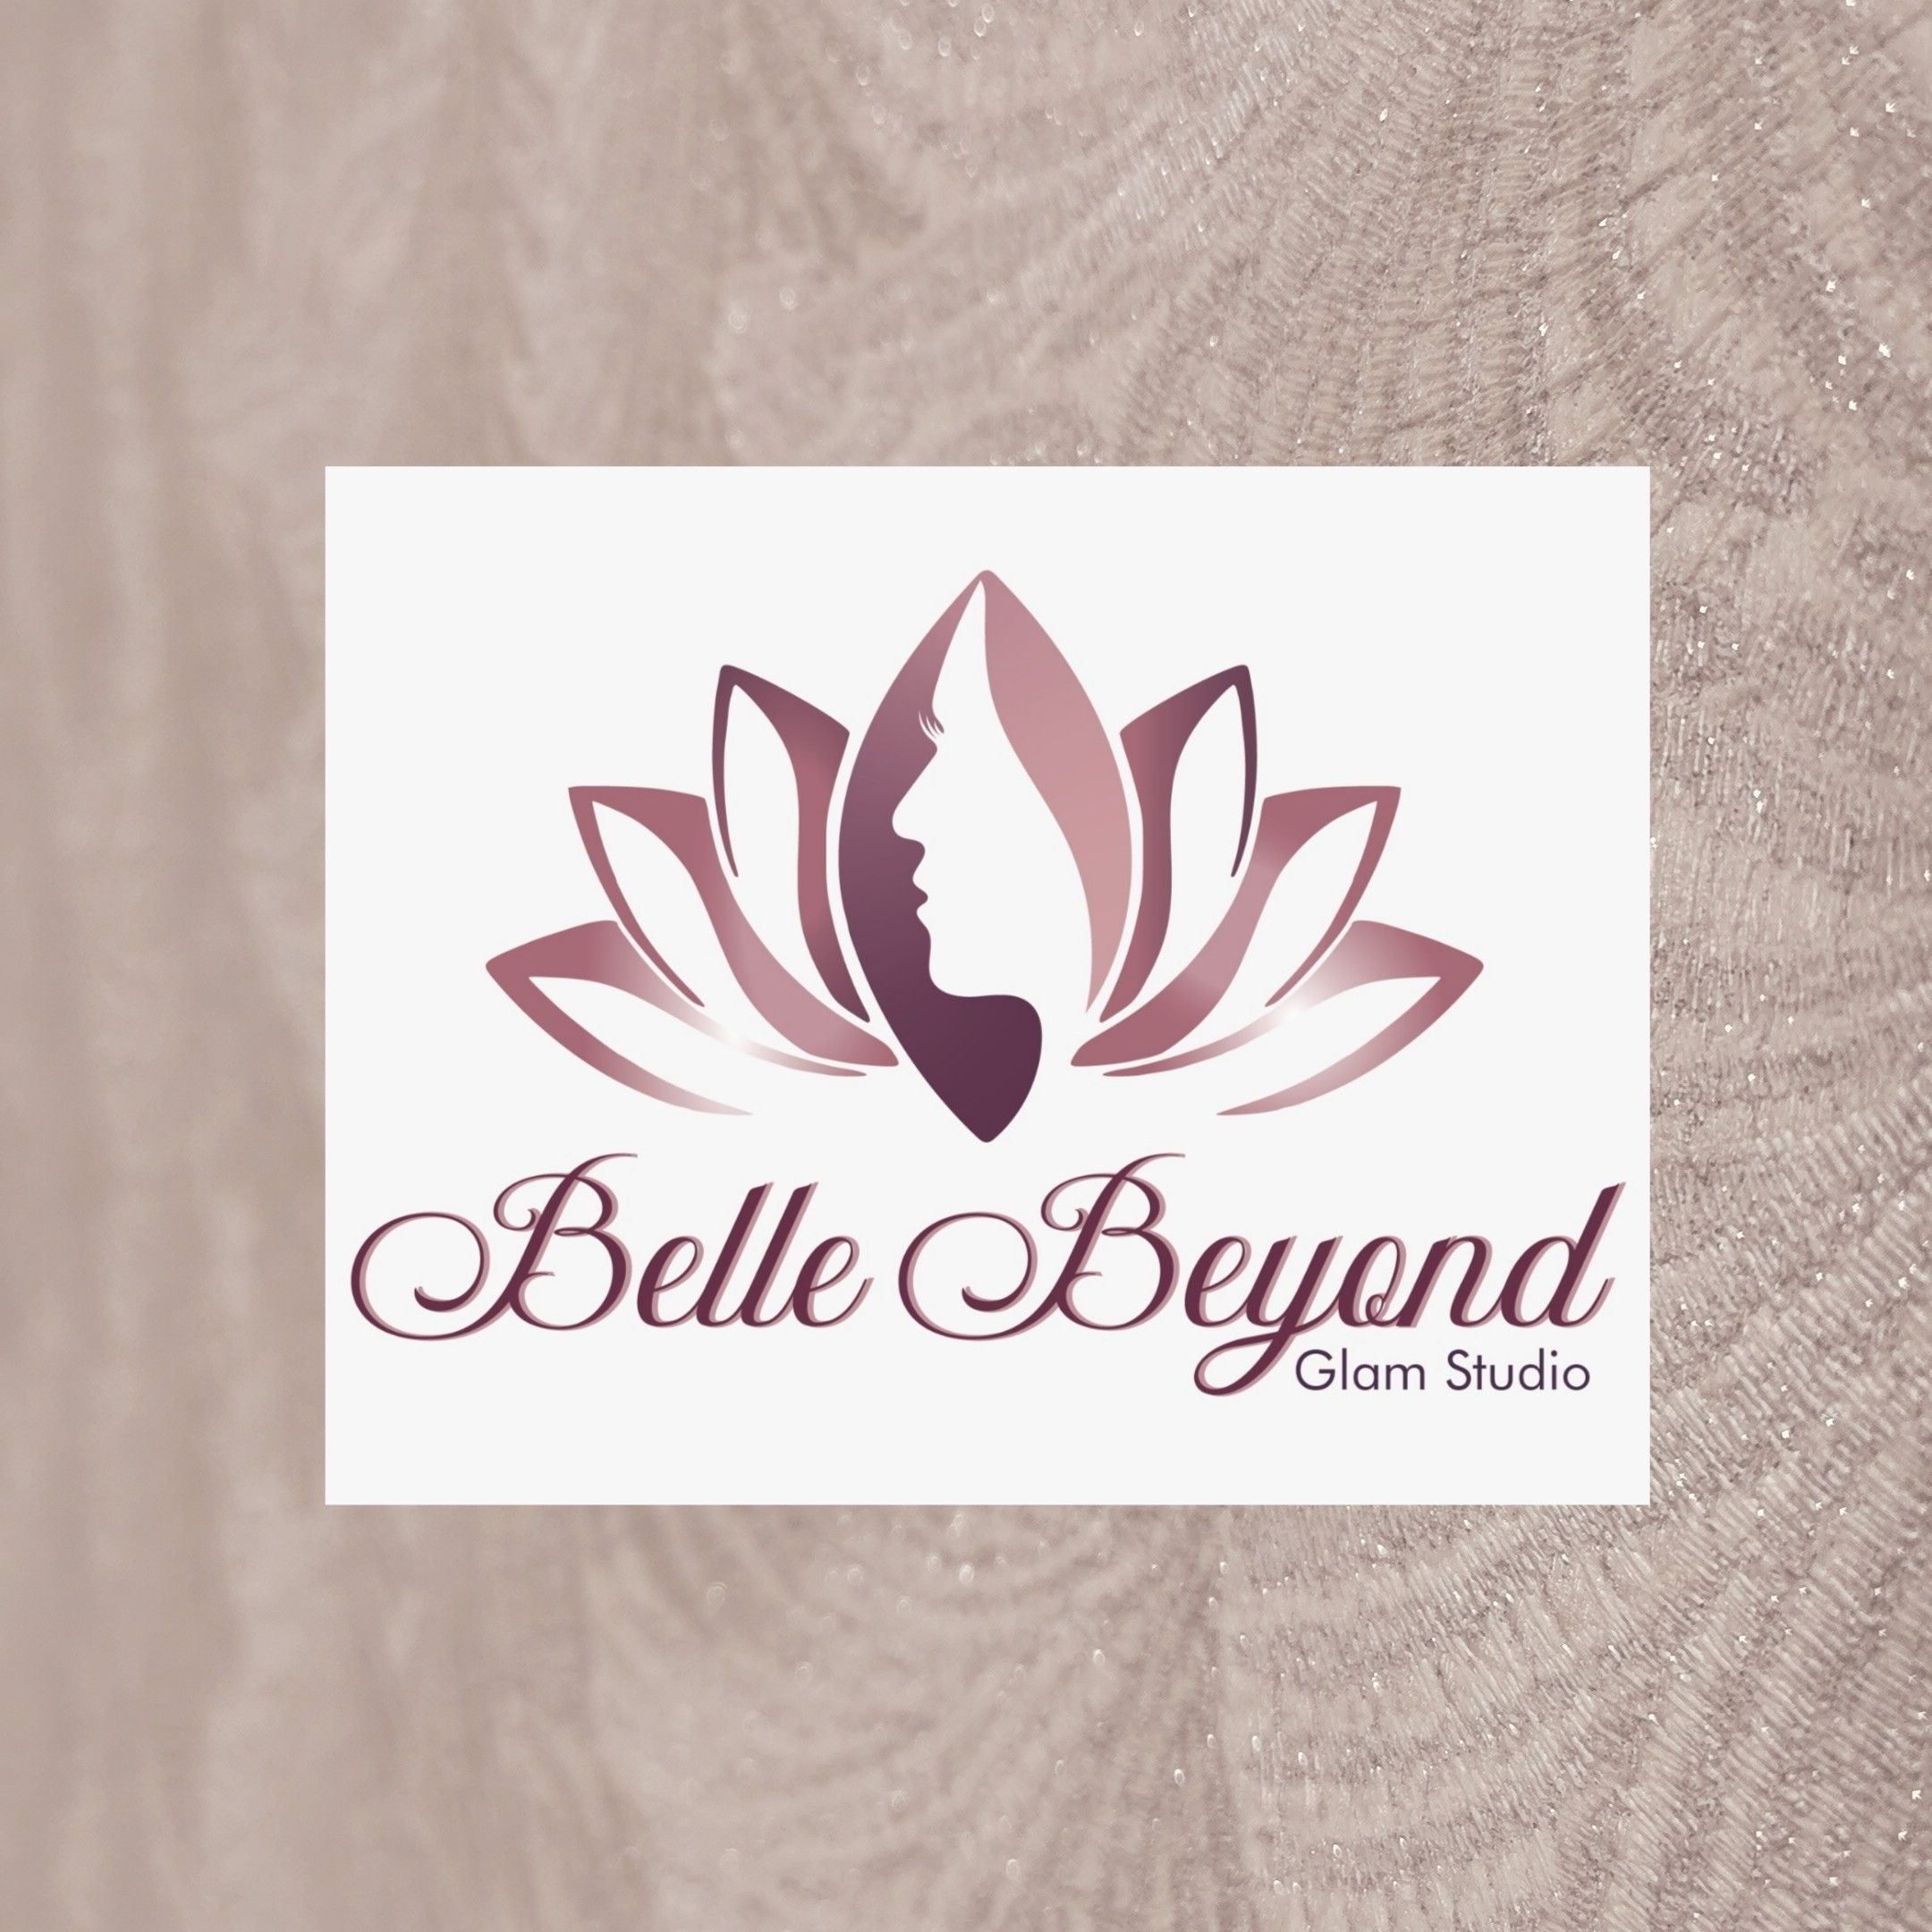 Belle Beyond Glam Studio, 566 Rubenstein Drive, Moreleta Park, Rubenstein Office Park, Ground Floor, 0044, Pretoria